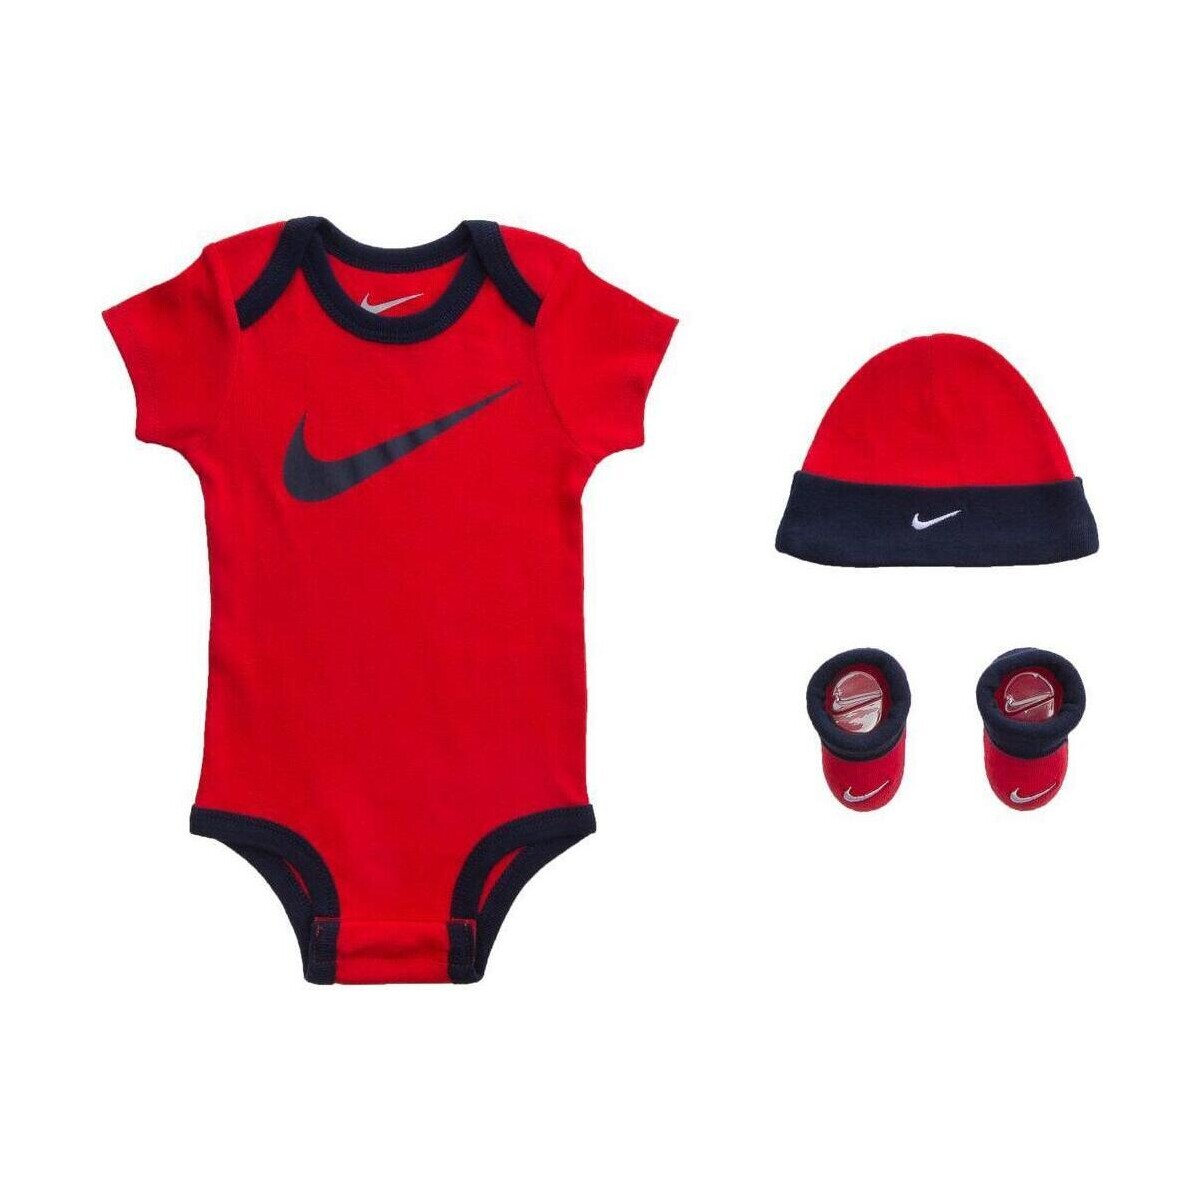 Abbigliamento Bambino Completo Nike LN0072 Bimbo Altri